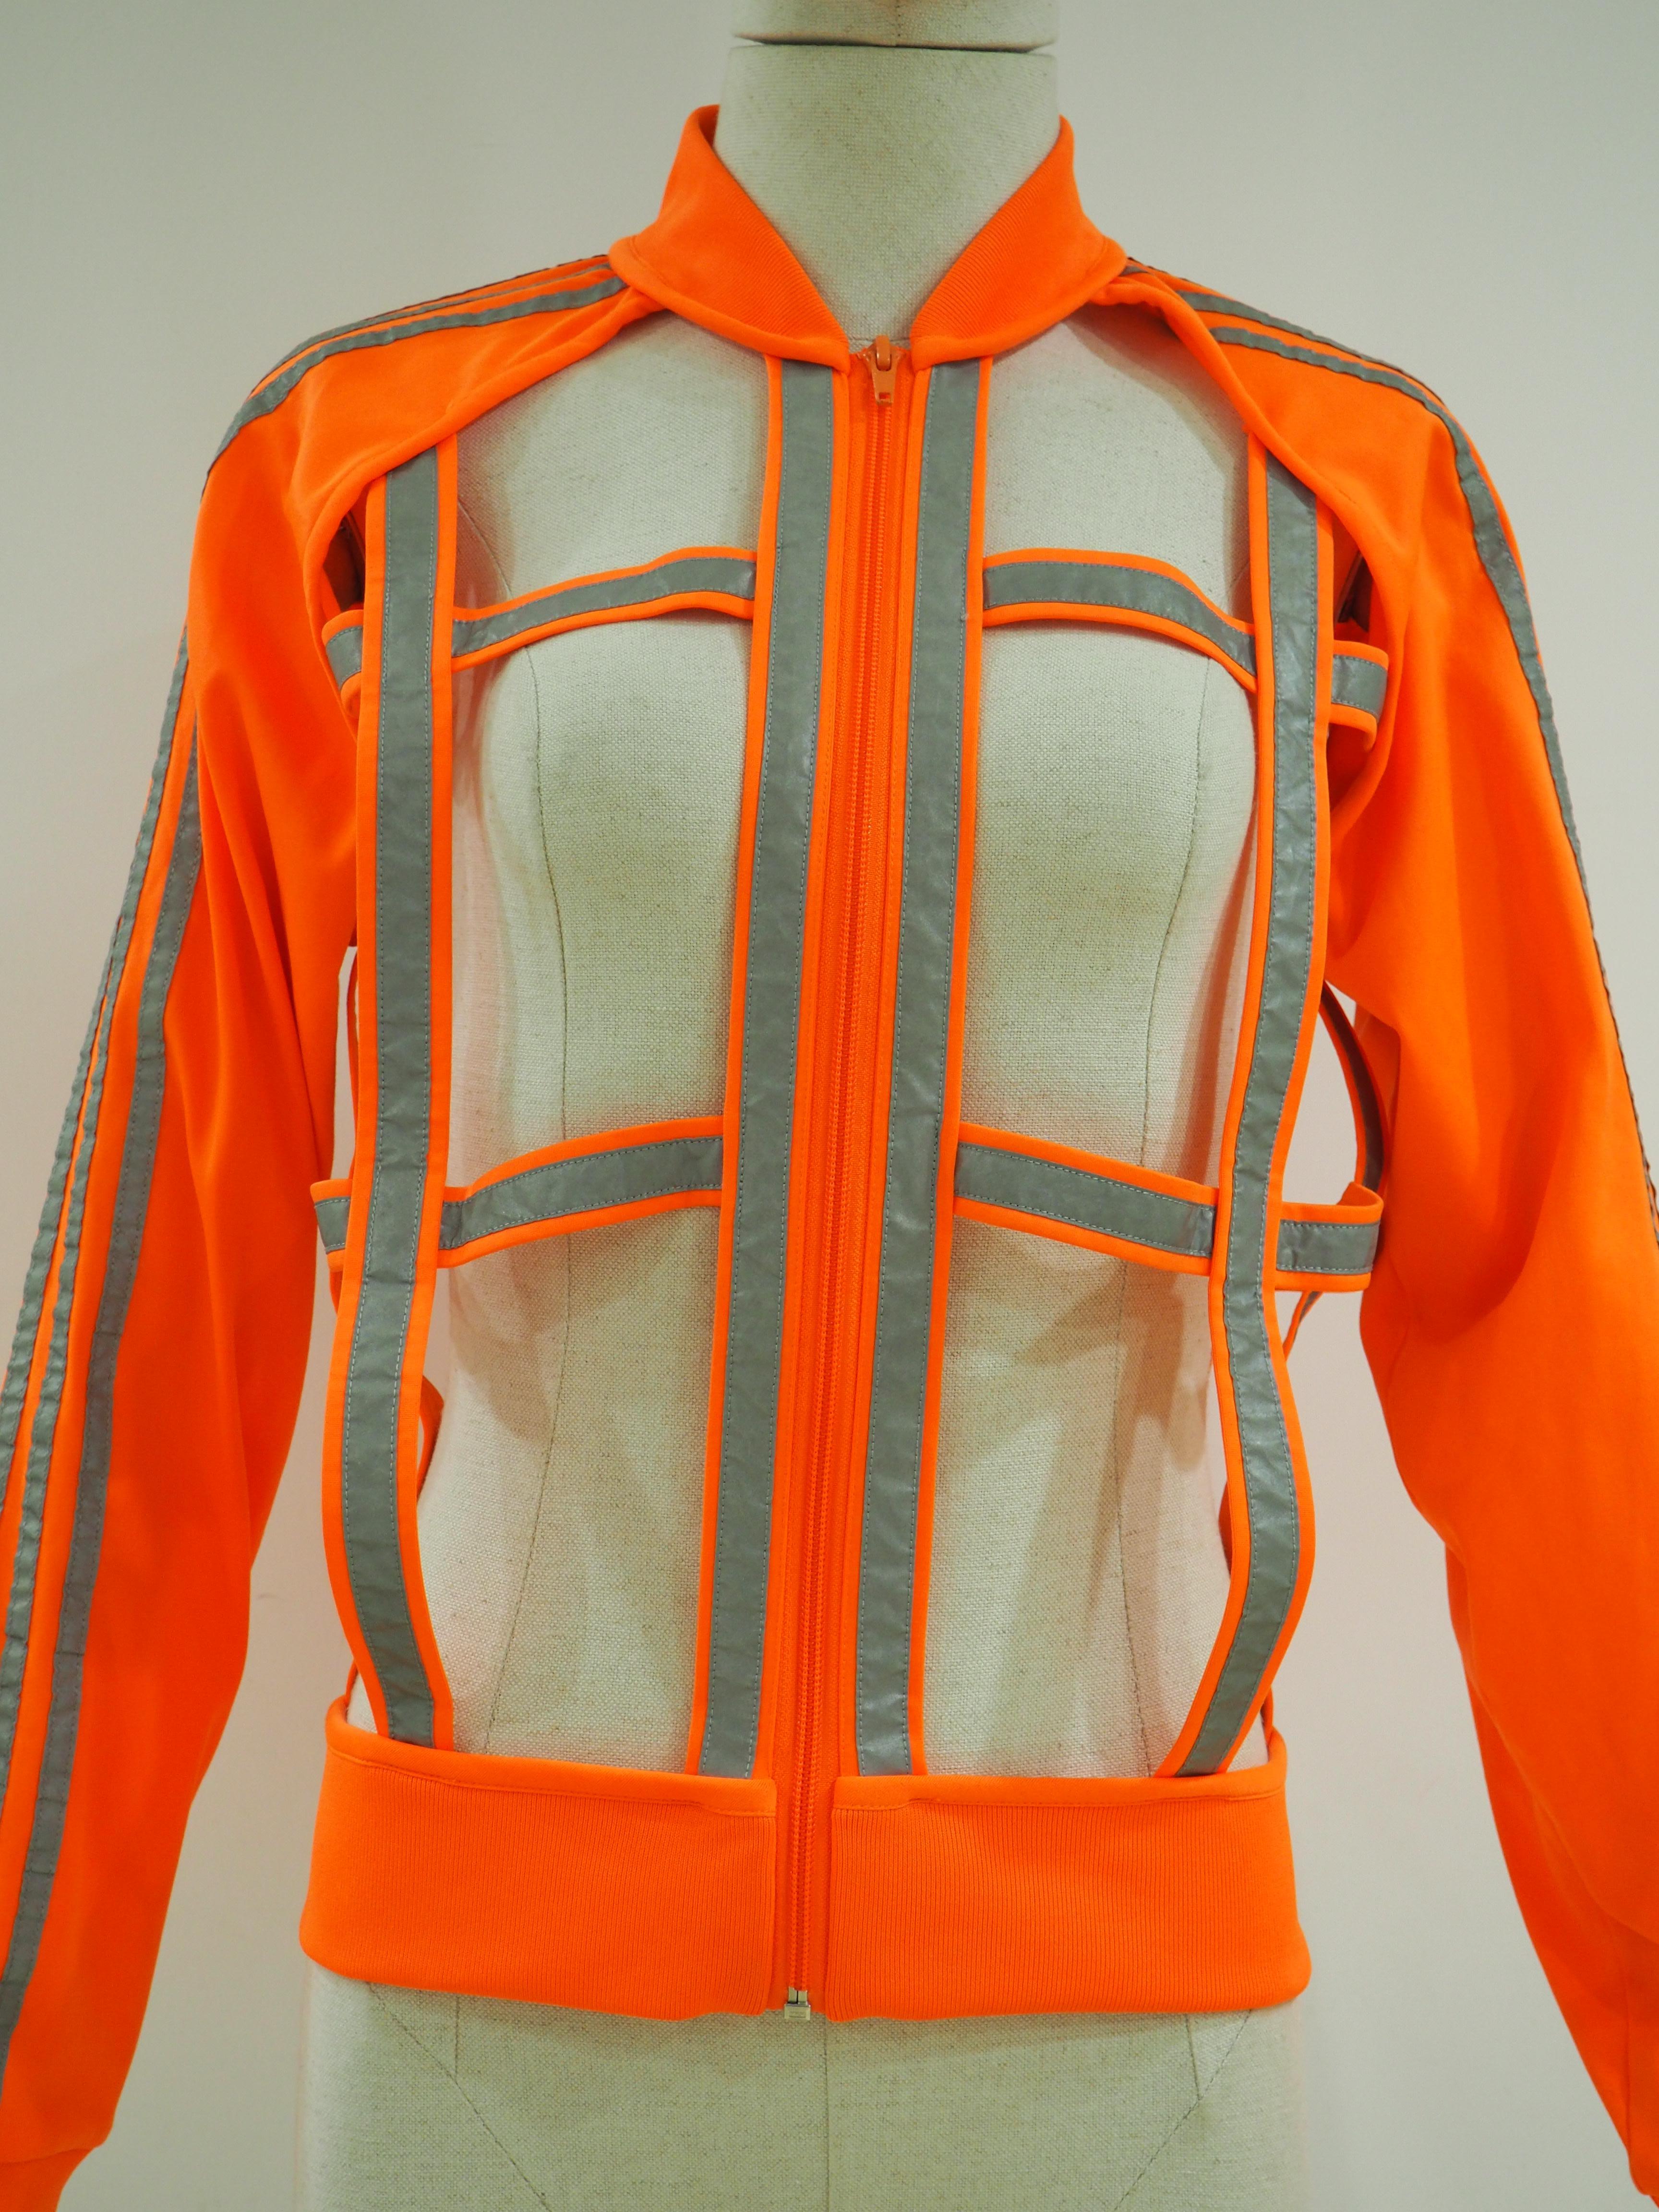 Jeremy Scott Adidas orange see through jacket
Fluo orange and silver jacket
size M
